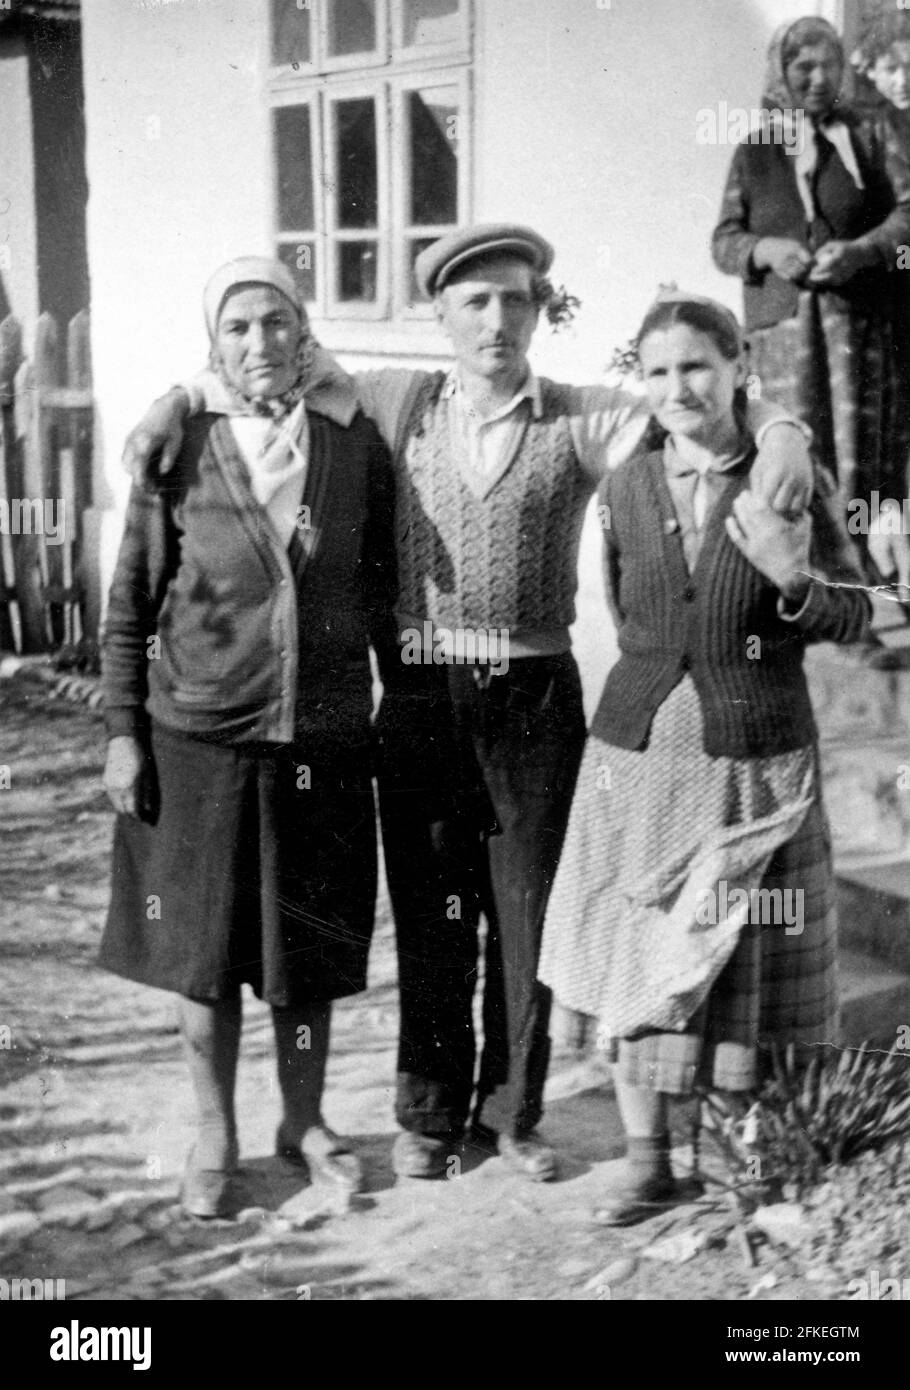 Familienportrait von einfachen Dorfmenschen in Bulgarien, Osteuropa um die 1950er Jahre Stockfoto